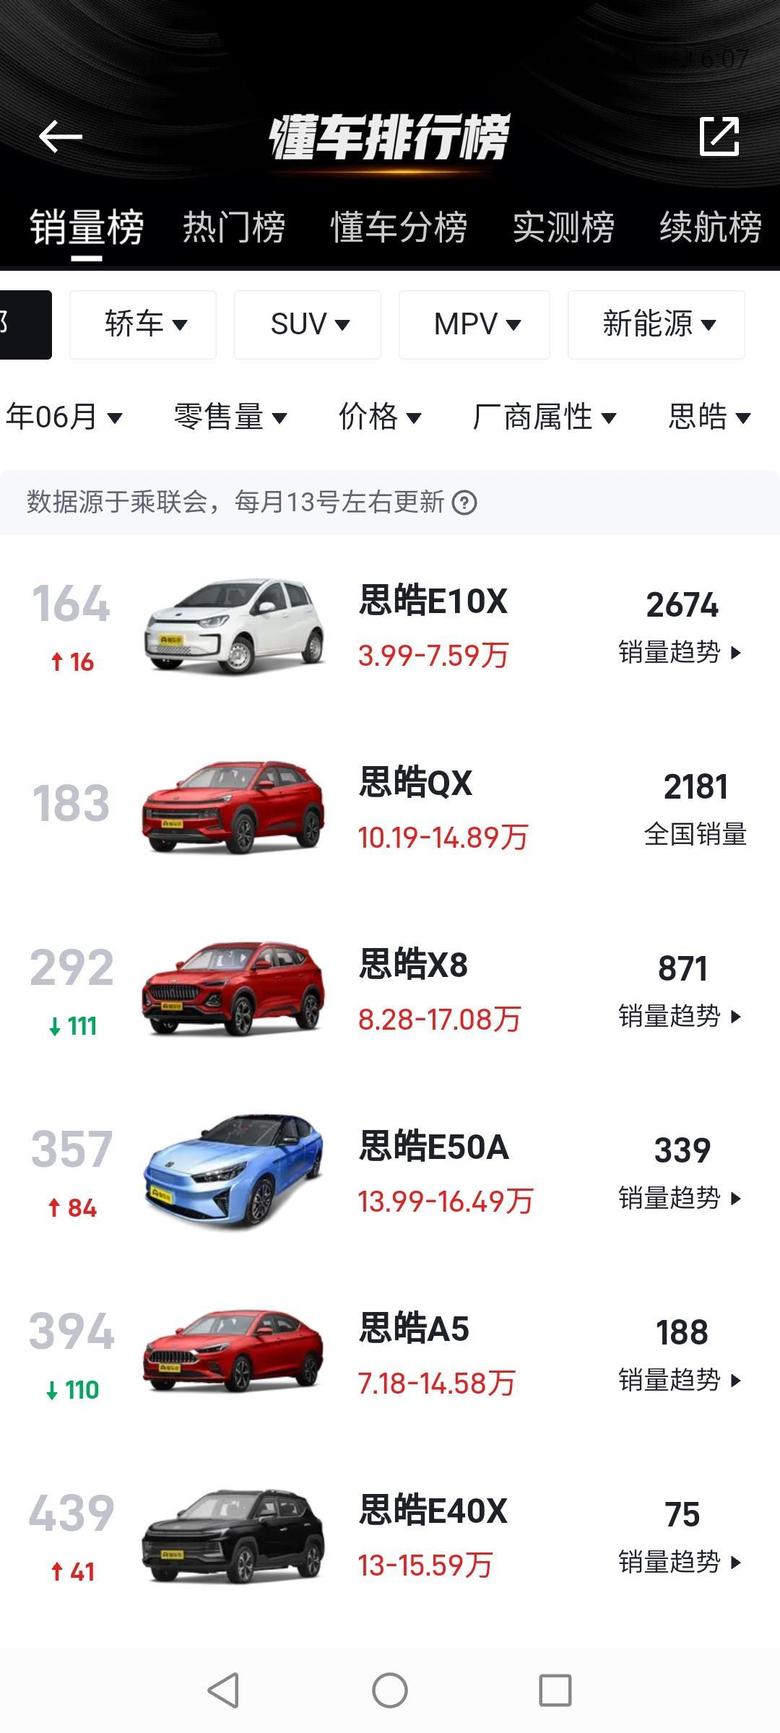 思皓qx 卖了2181辆。SUV里面第88位，所有车型总榜第183。对6月26号才上市的车型，看着还行？肯定是有提前预售的数字在里面，车友们你们觉得呢？